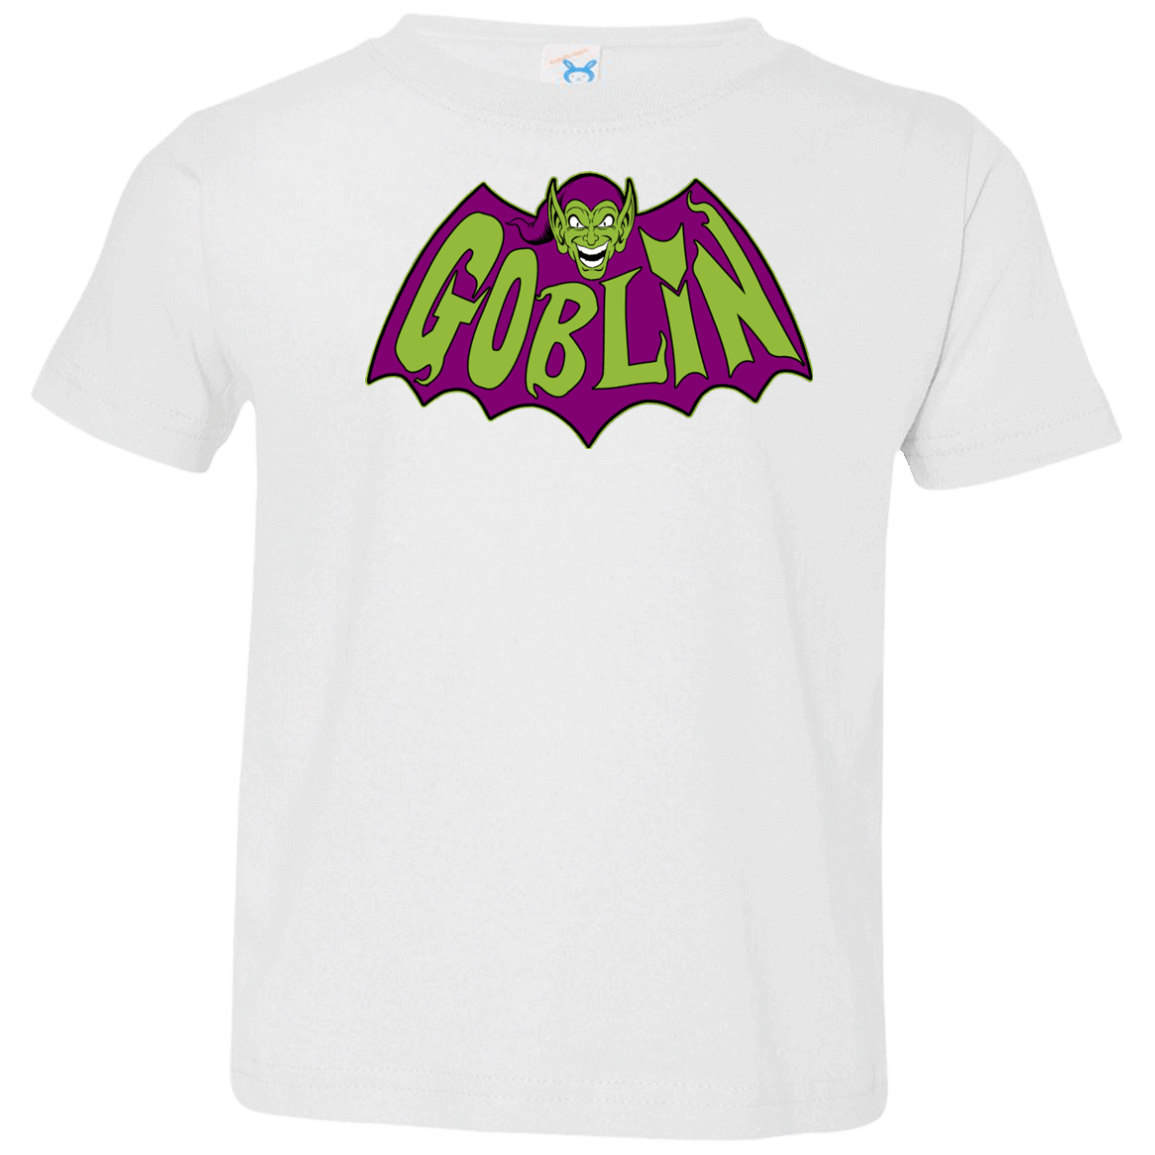 T-Shirts White / 2T Goblin Toddler Premium T-Shirt